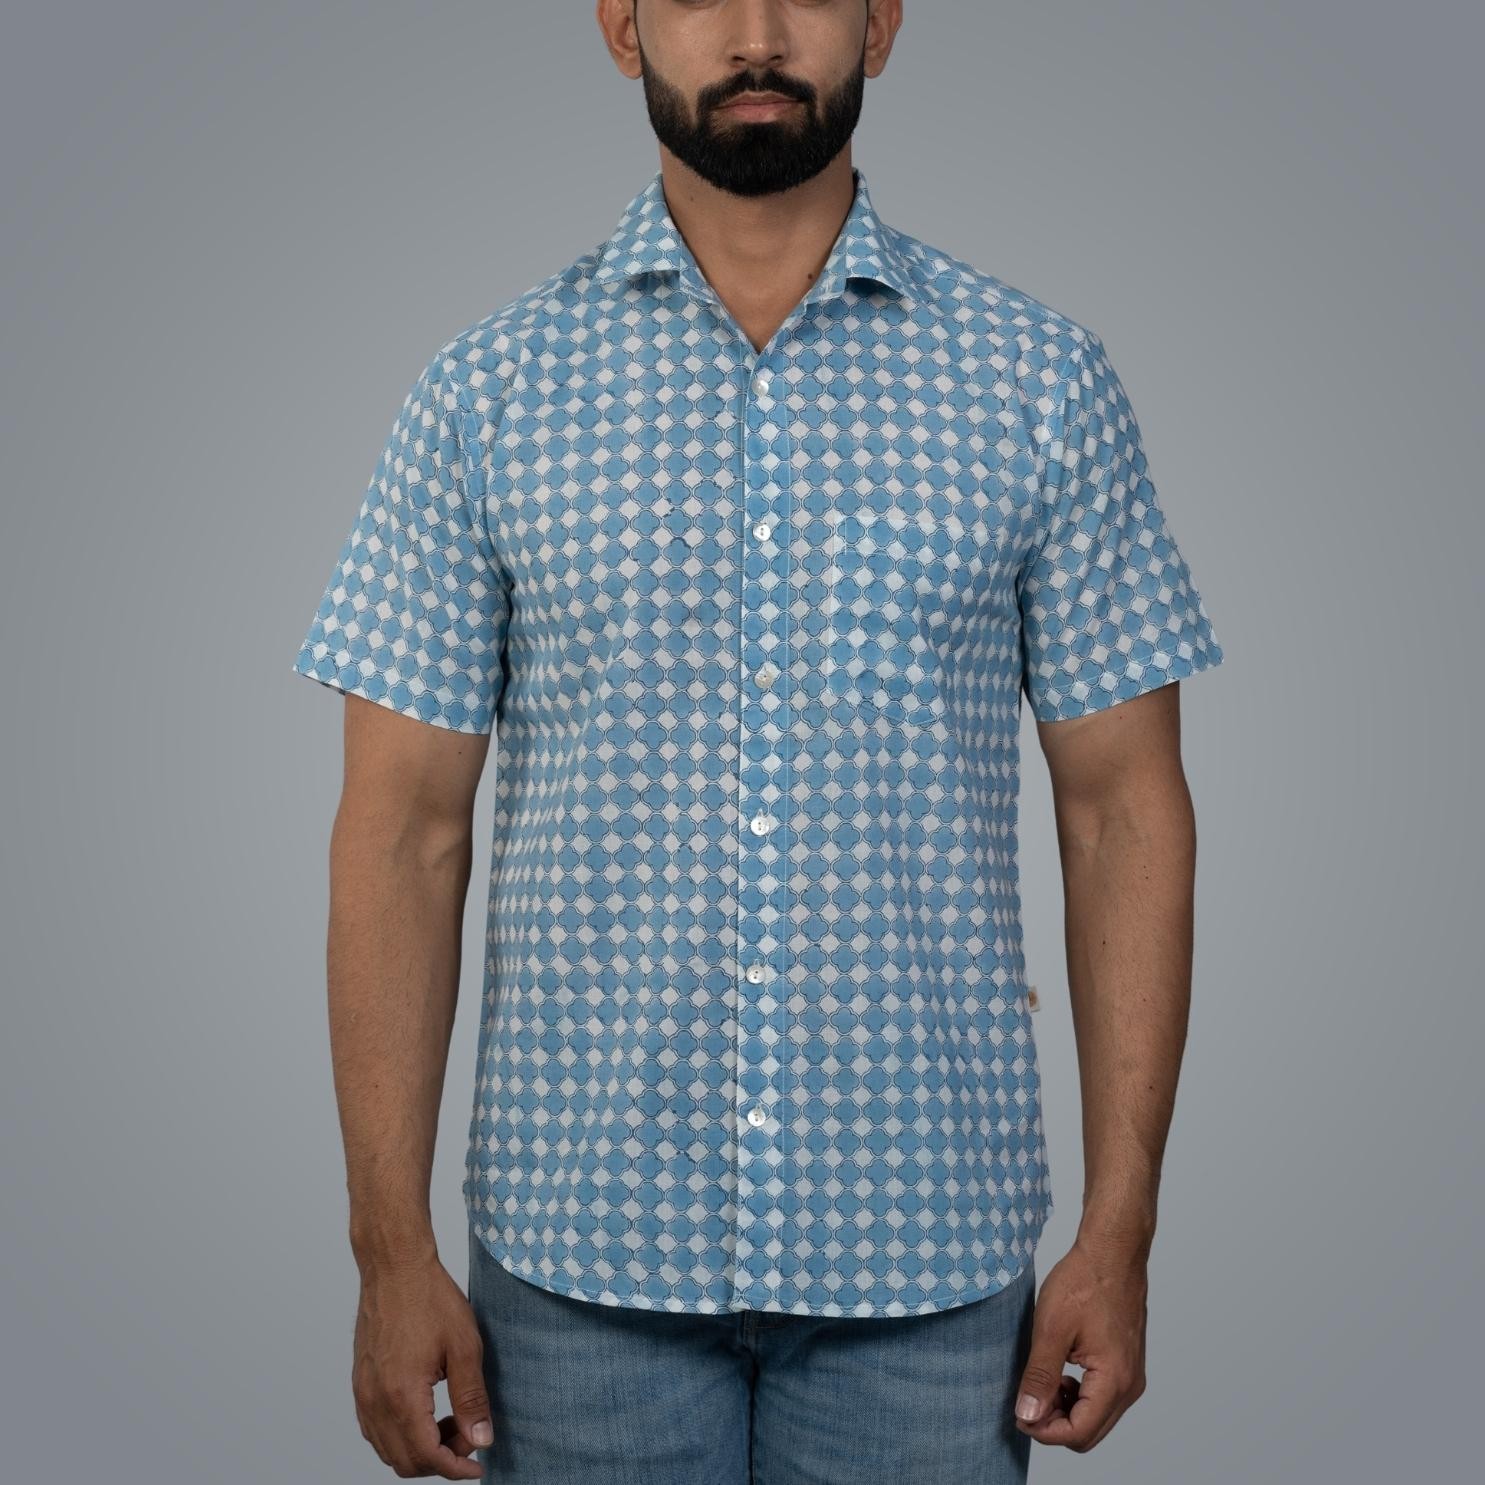 Short Sleeve Indian Hand Block Print Shirt Gud Jali Cornflower Blue Design Shirt 100% Cotton Fabric